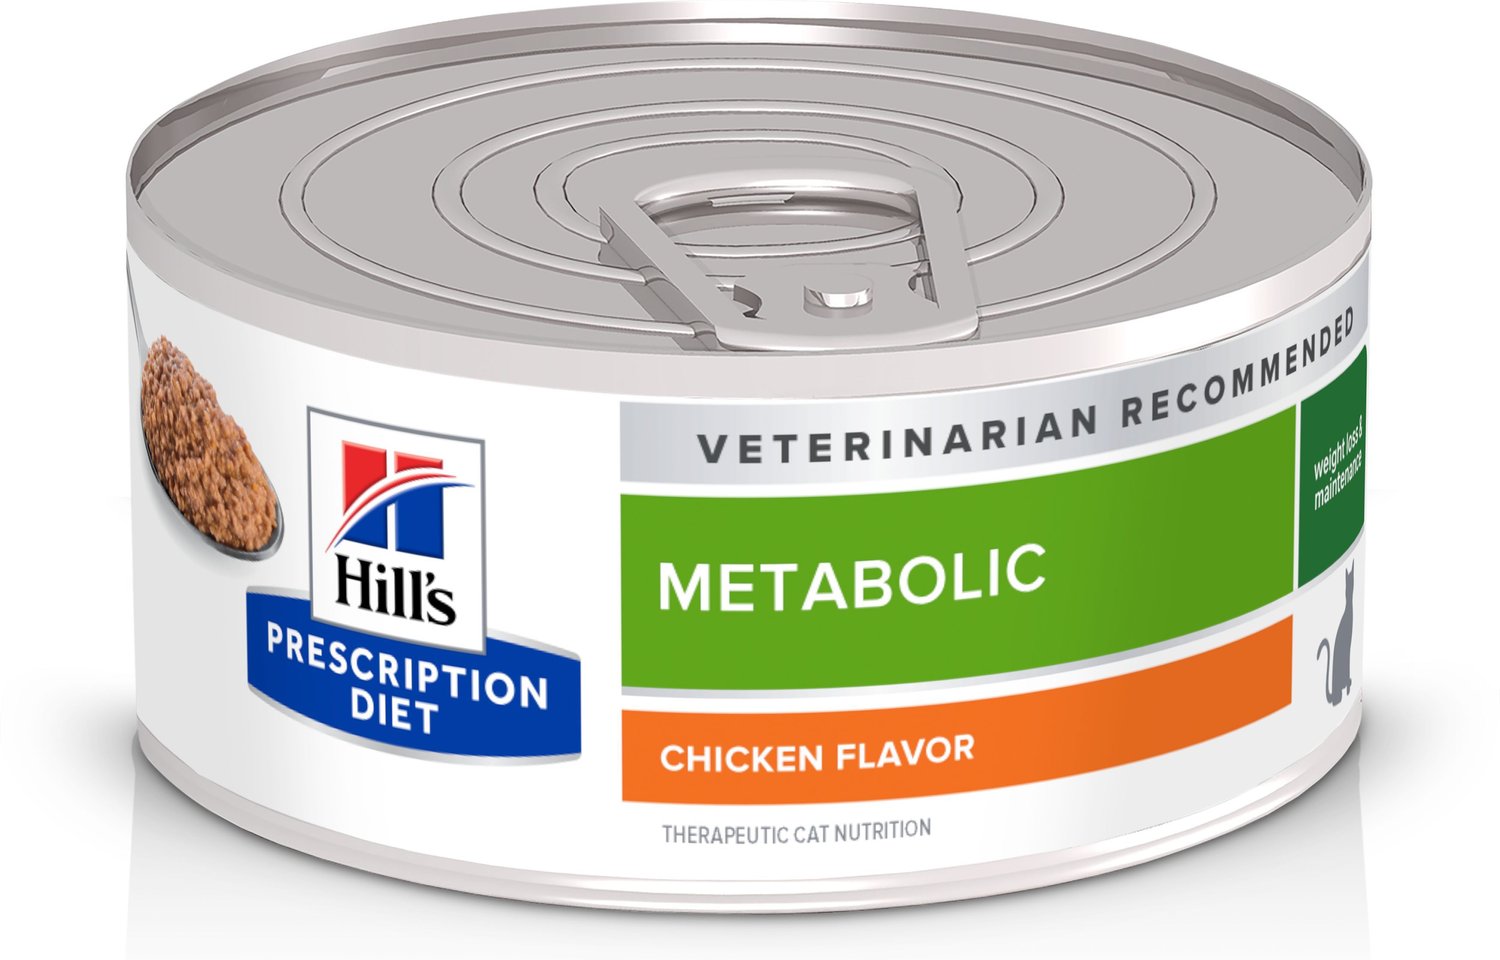 HILL'S PRESCRIPTION DIET Metabolic Weight Management Chicken Flavor